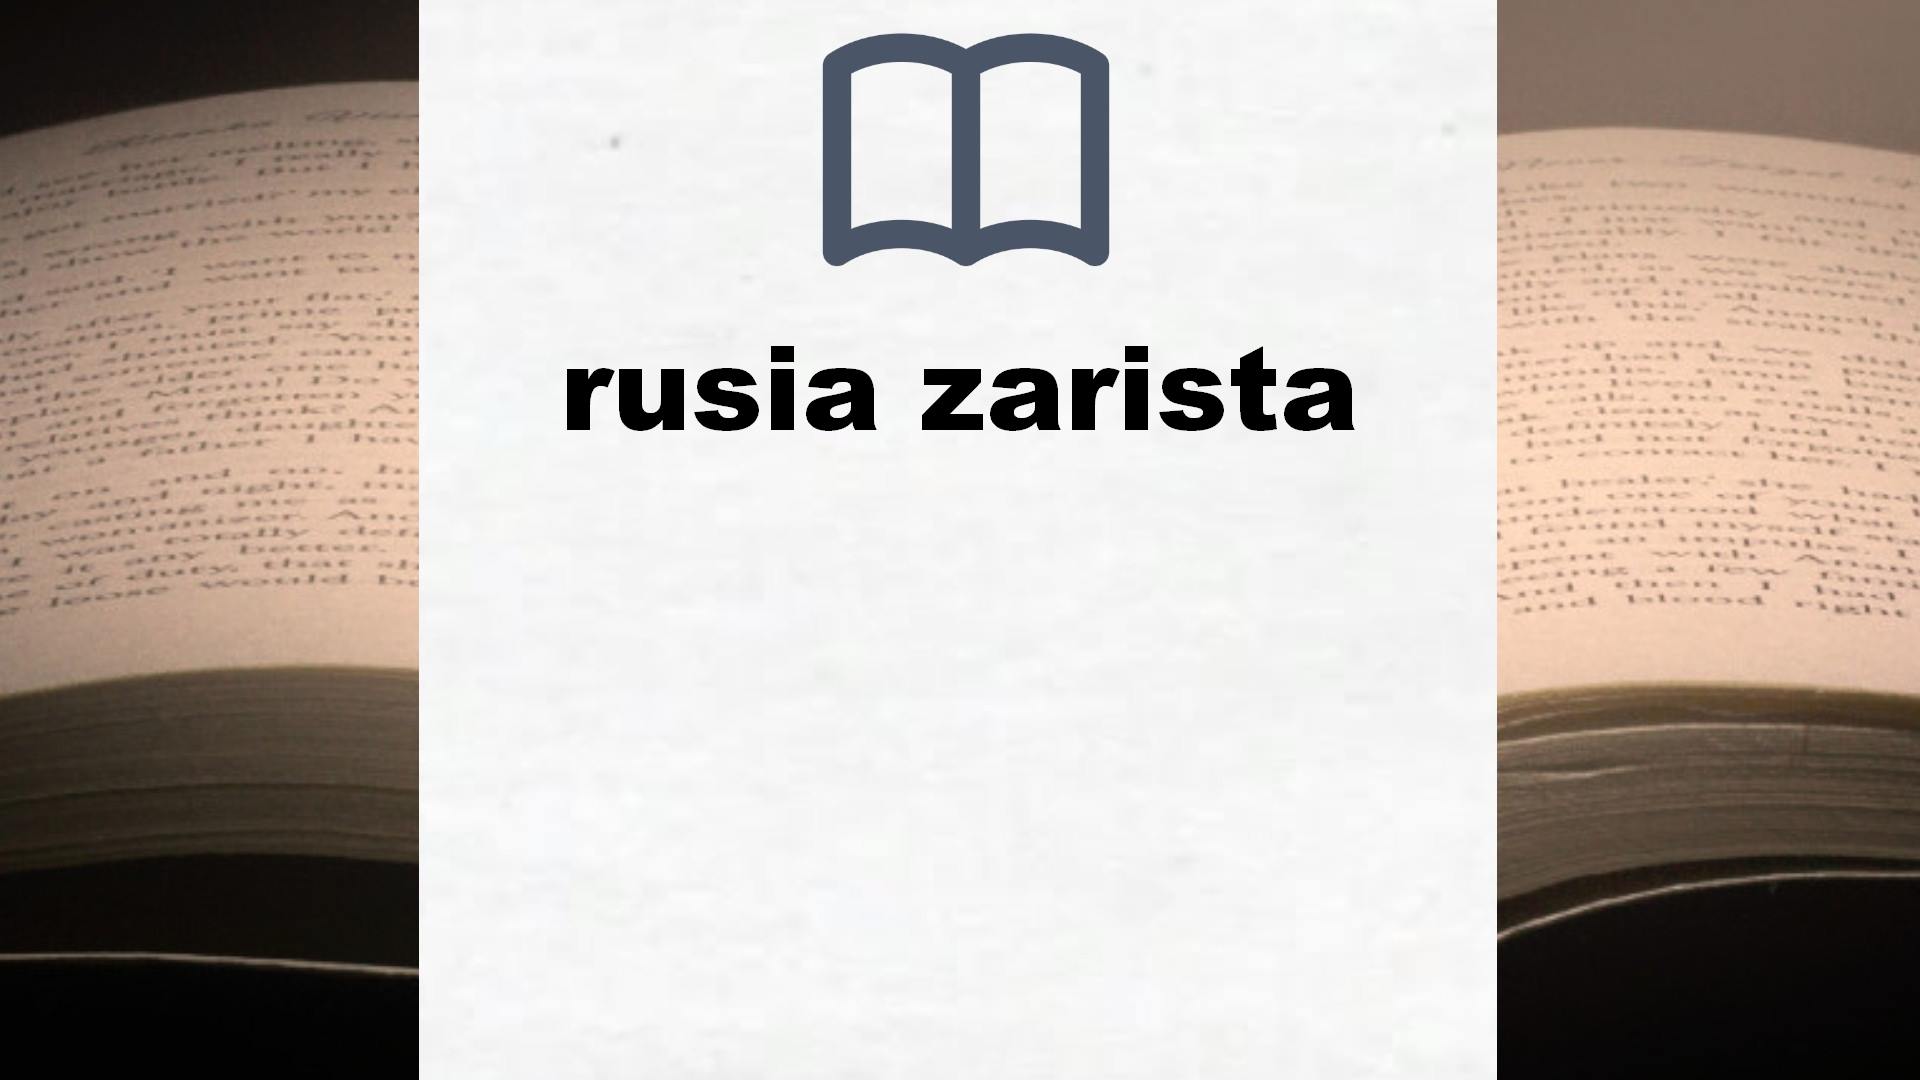 Libros sobre rusia zarista